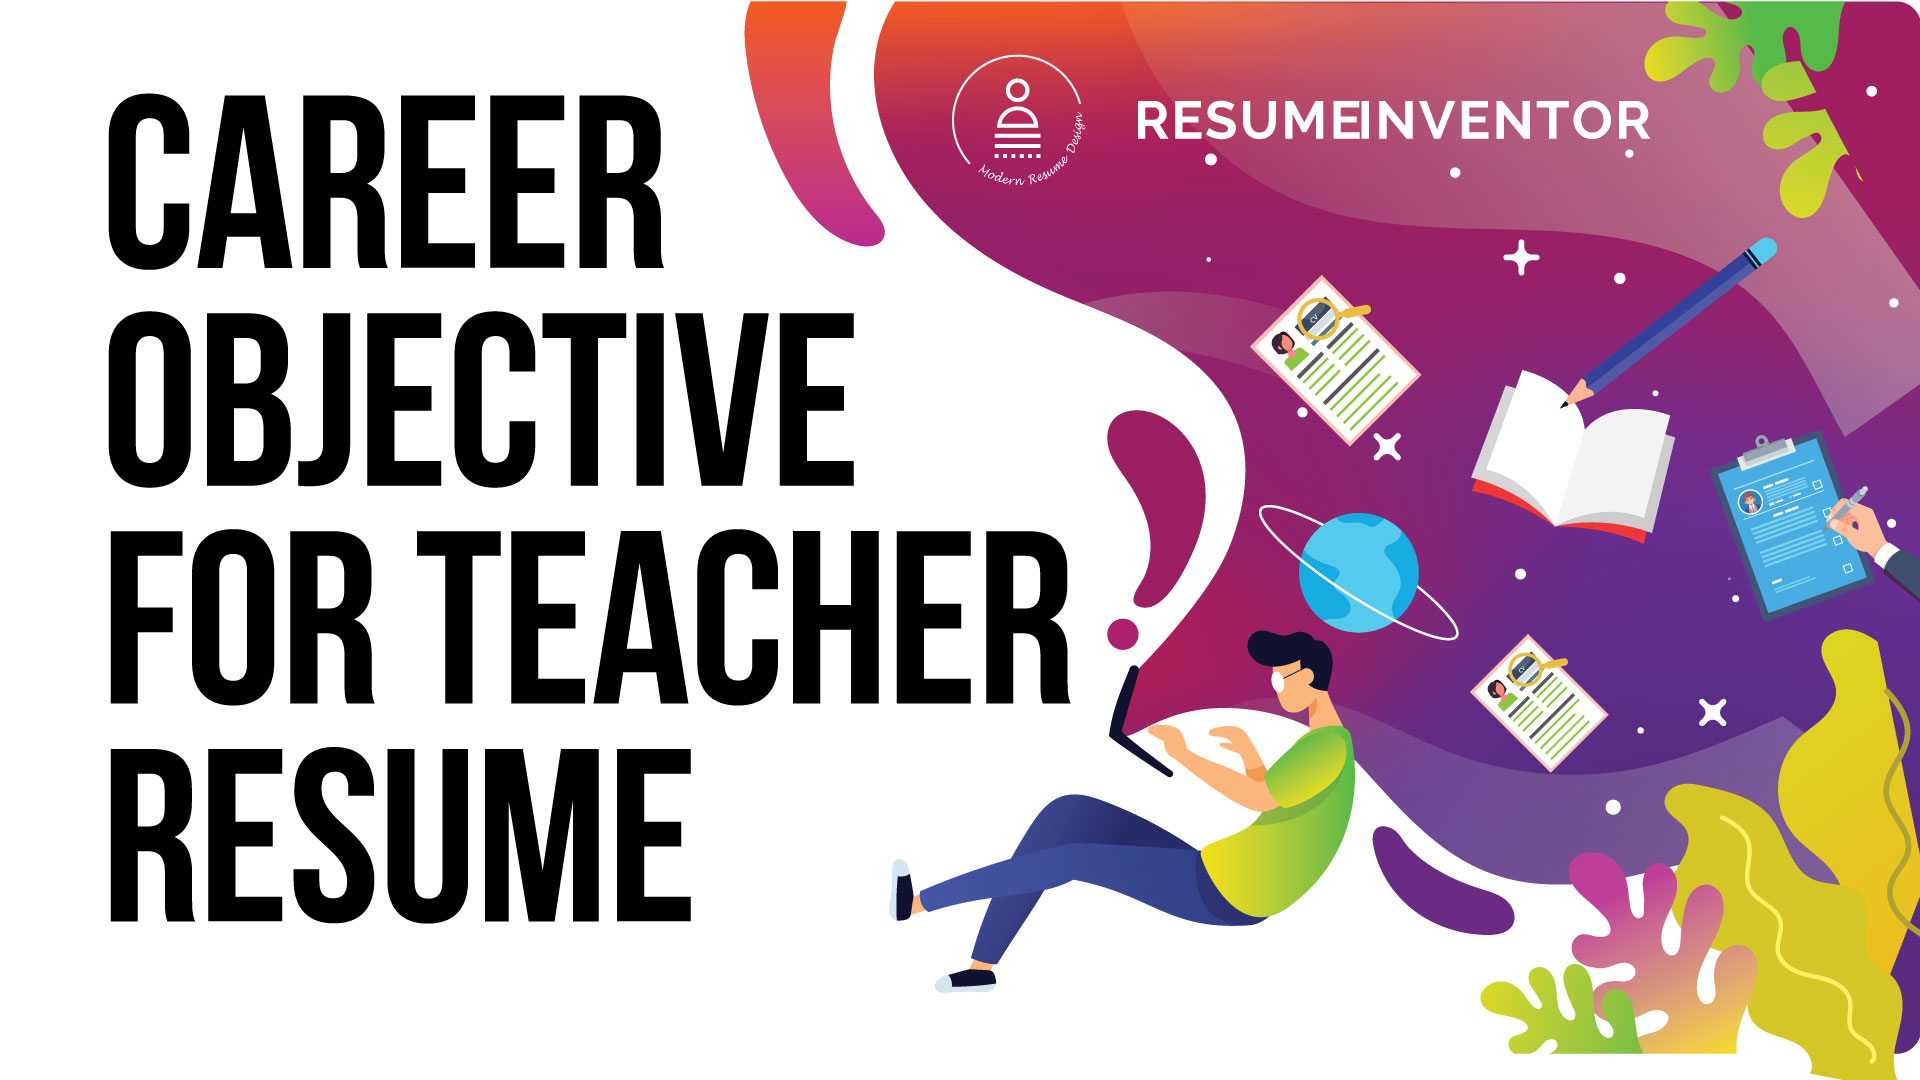 Career Objective for Teacher Resume